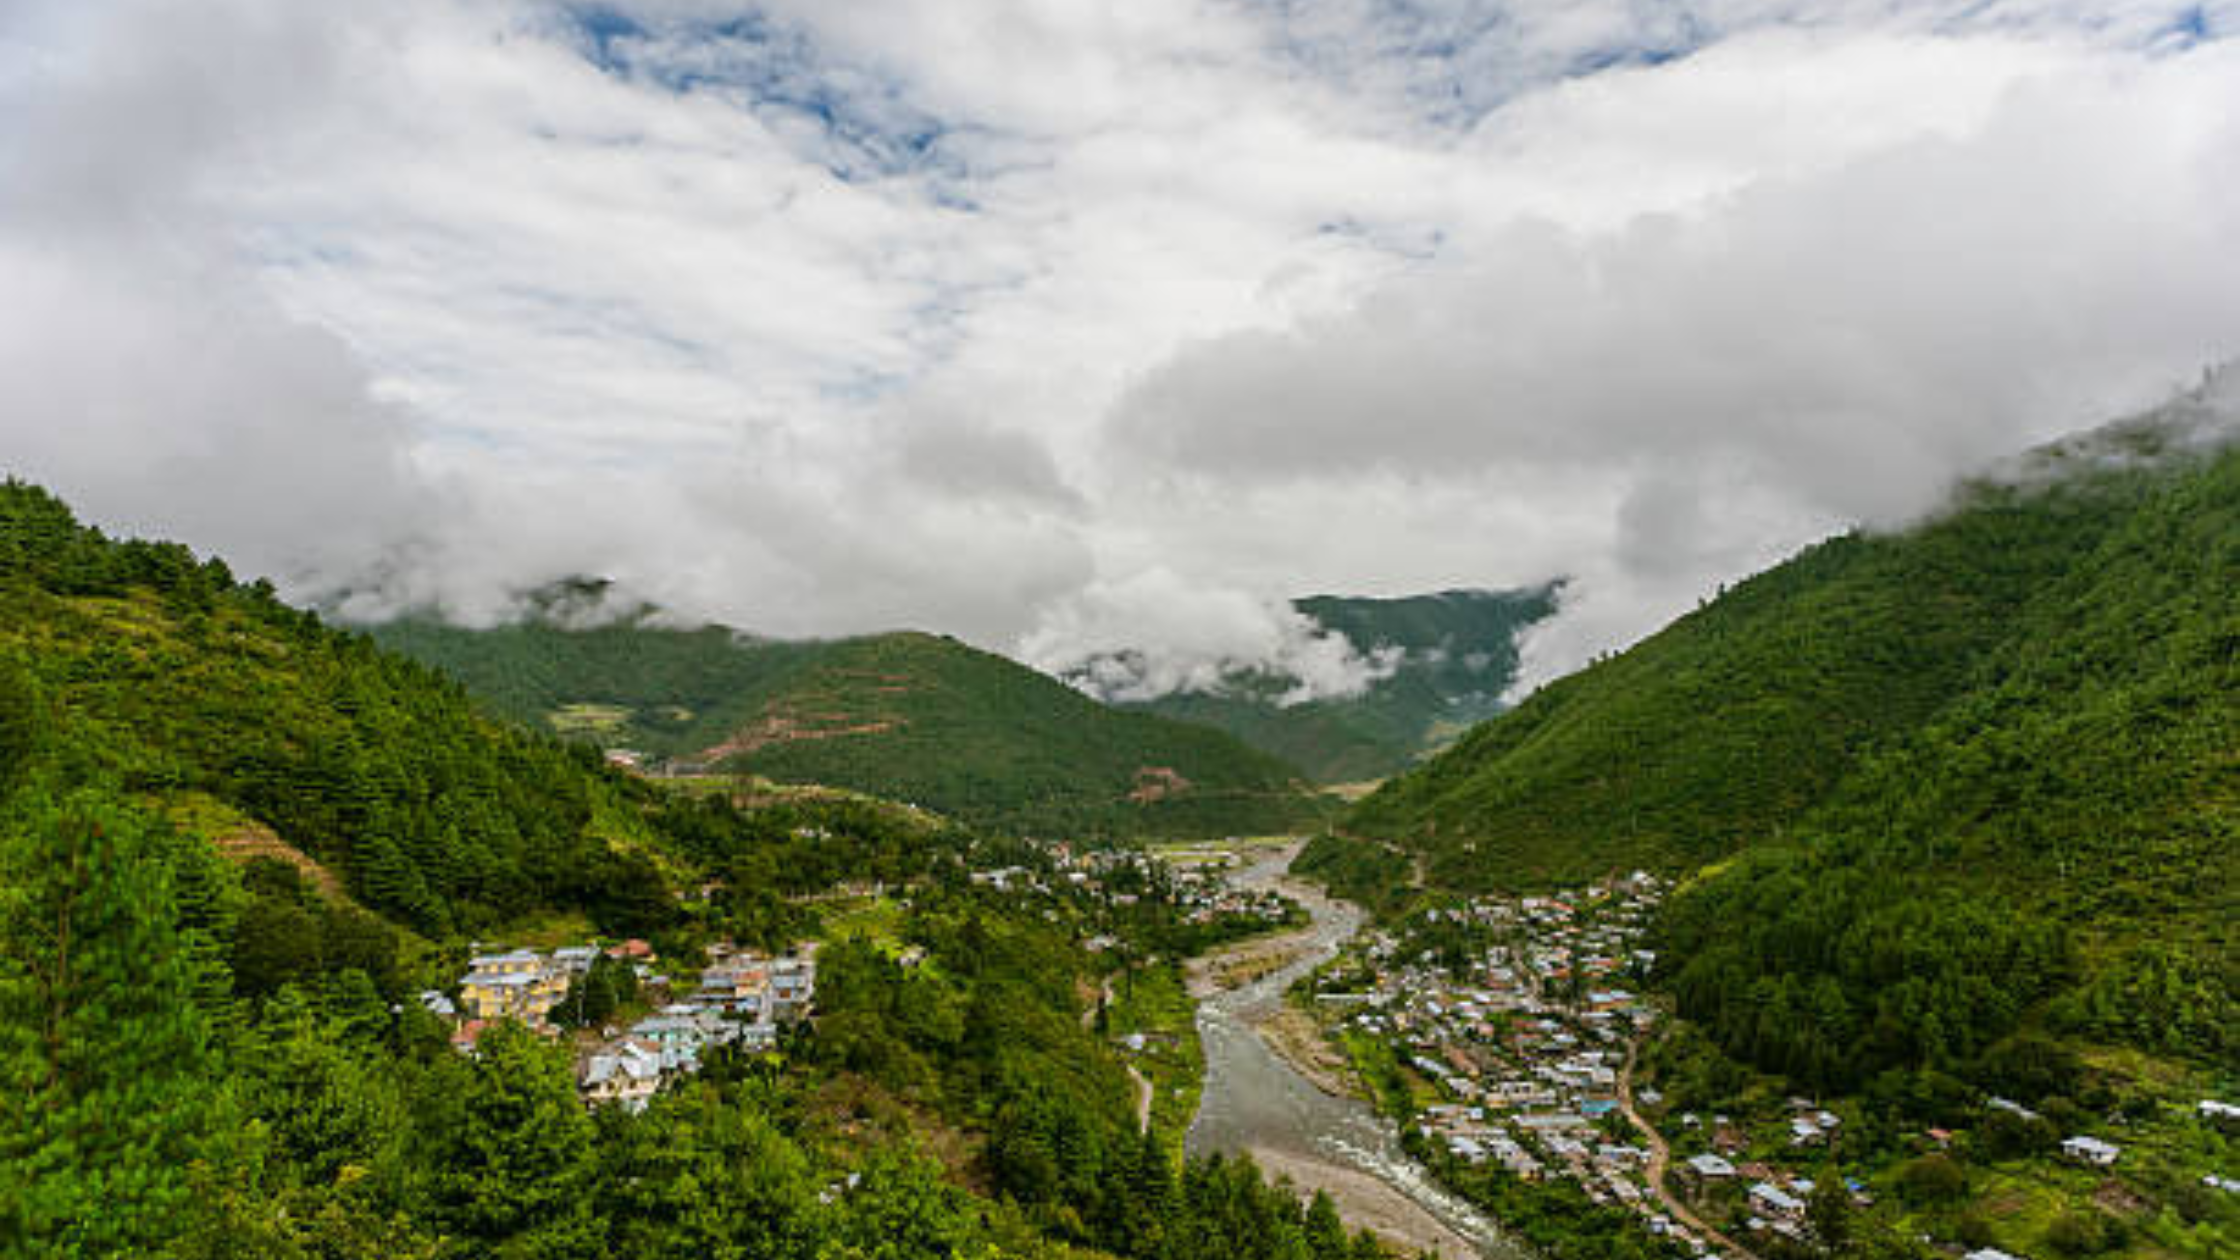 Western Arunachal Pradesh